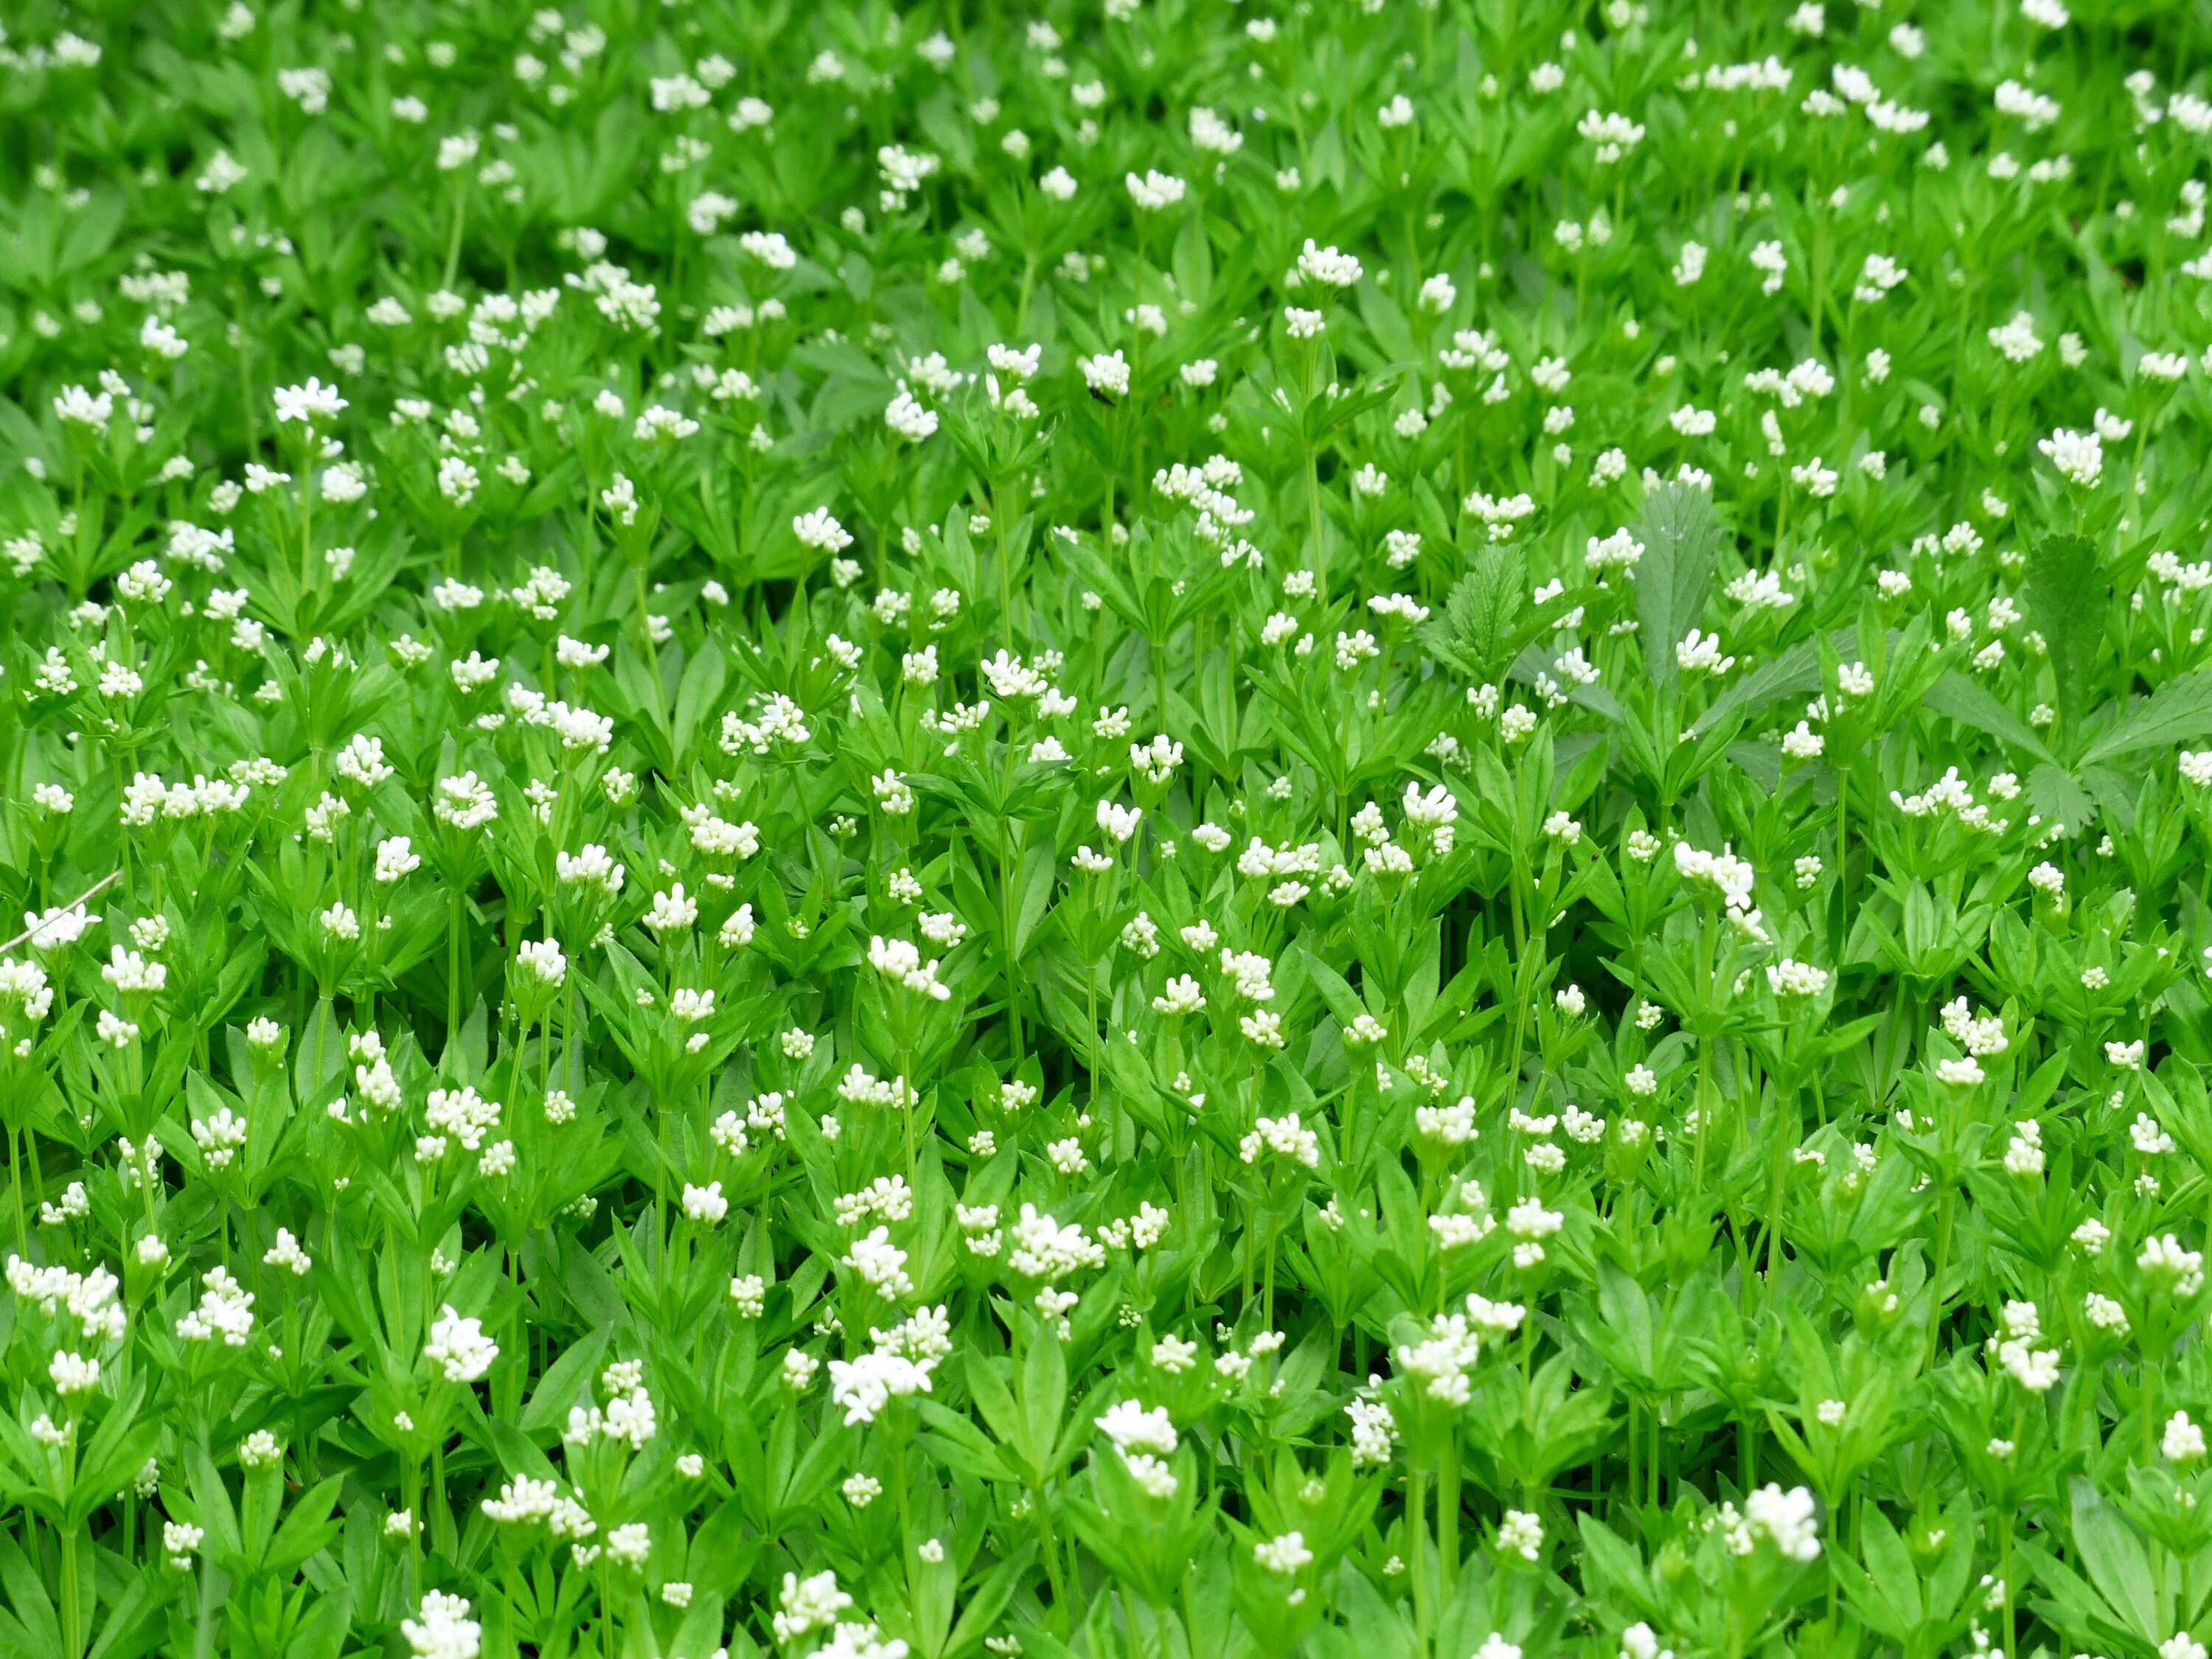 Травянистое растение 3 буквы. Травка с белыми мелкими цветочками. Трава с белыми цветочками. Газон с мелкими цветочками. Трава с беленькими цветочками.